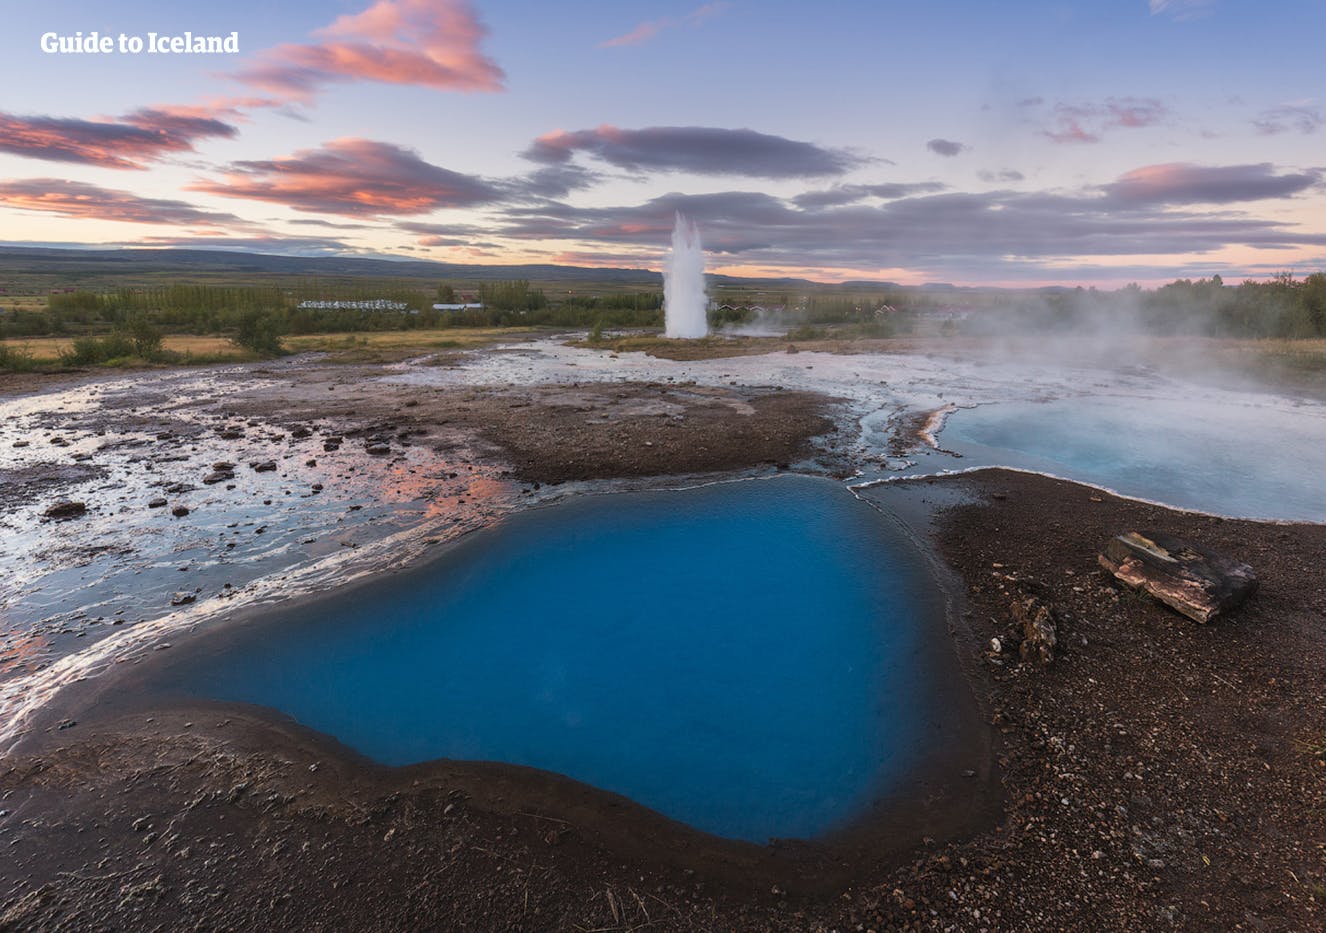 在冰岛黄金圈景区的盖歇尔间歇泉地热区，您将看到Strokkur间歇泉每隔5～10分钟便壮丽喷发一次